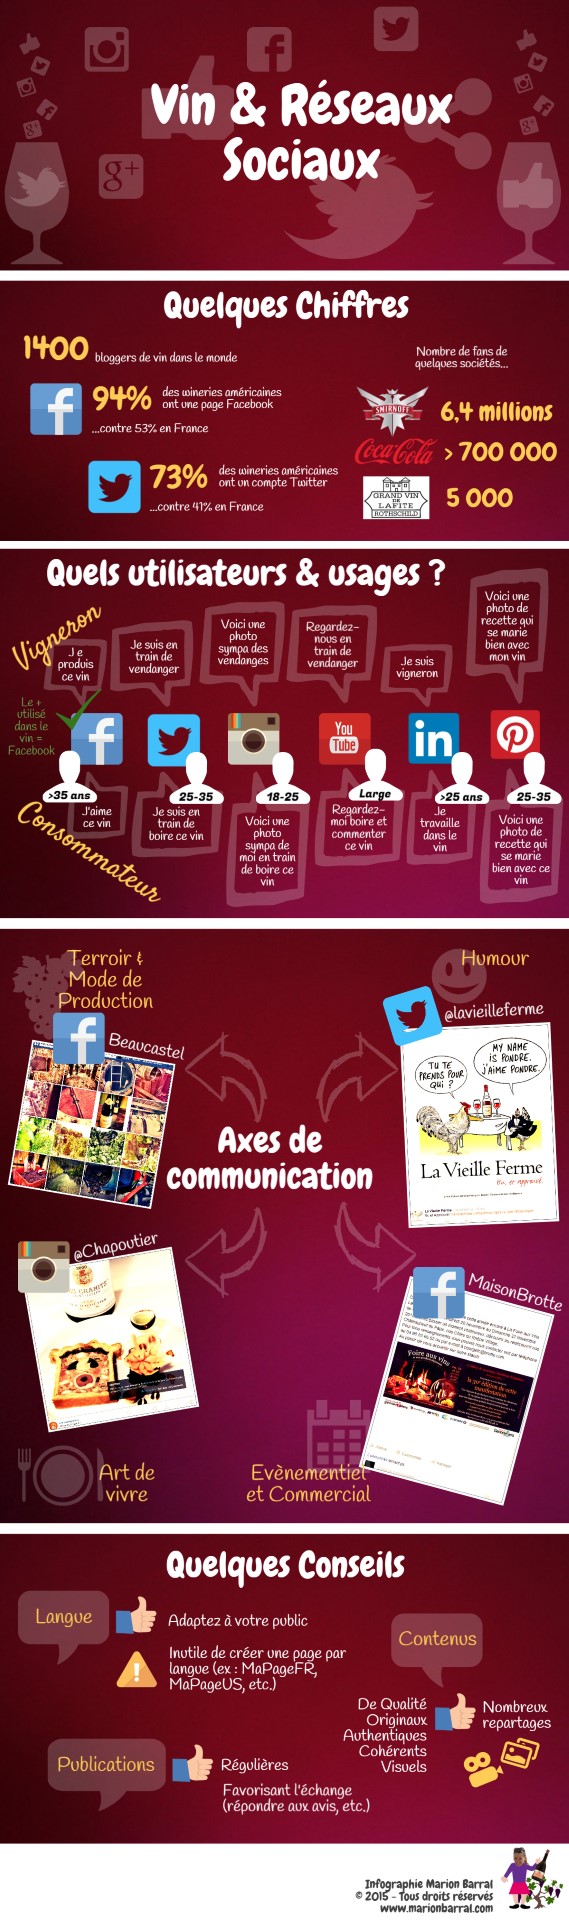 infographie sur les vin & réseaux sociaux